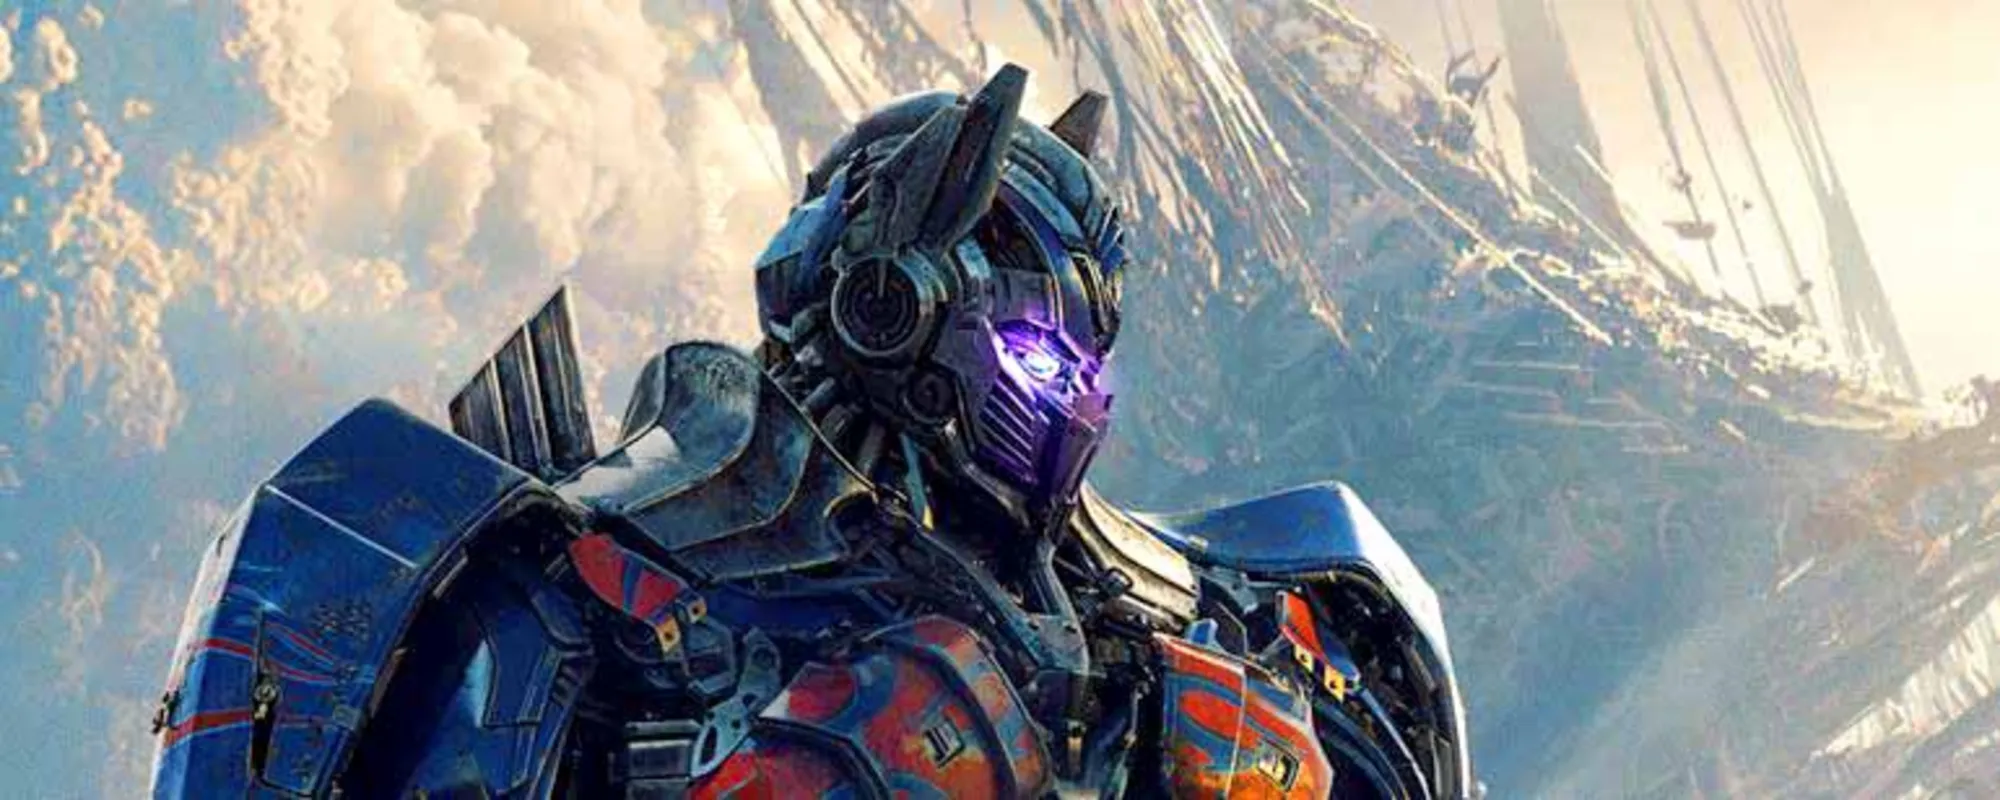 A trama propõe que os Transformers visitaram a Terra pela primeira vez na época do rei Arthur